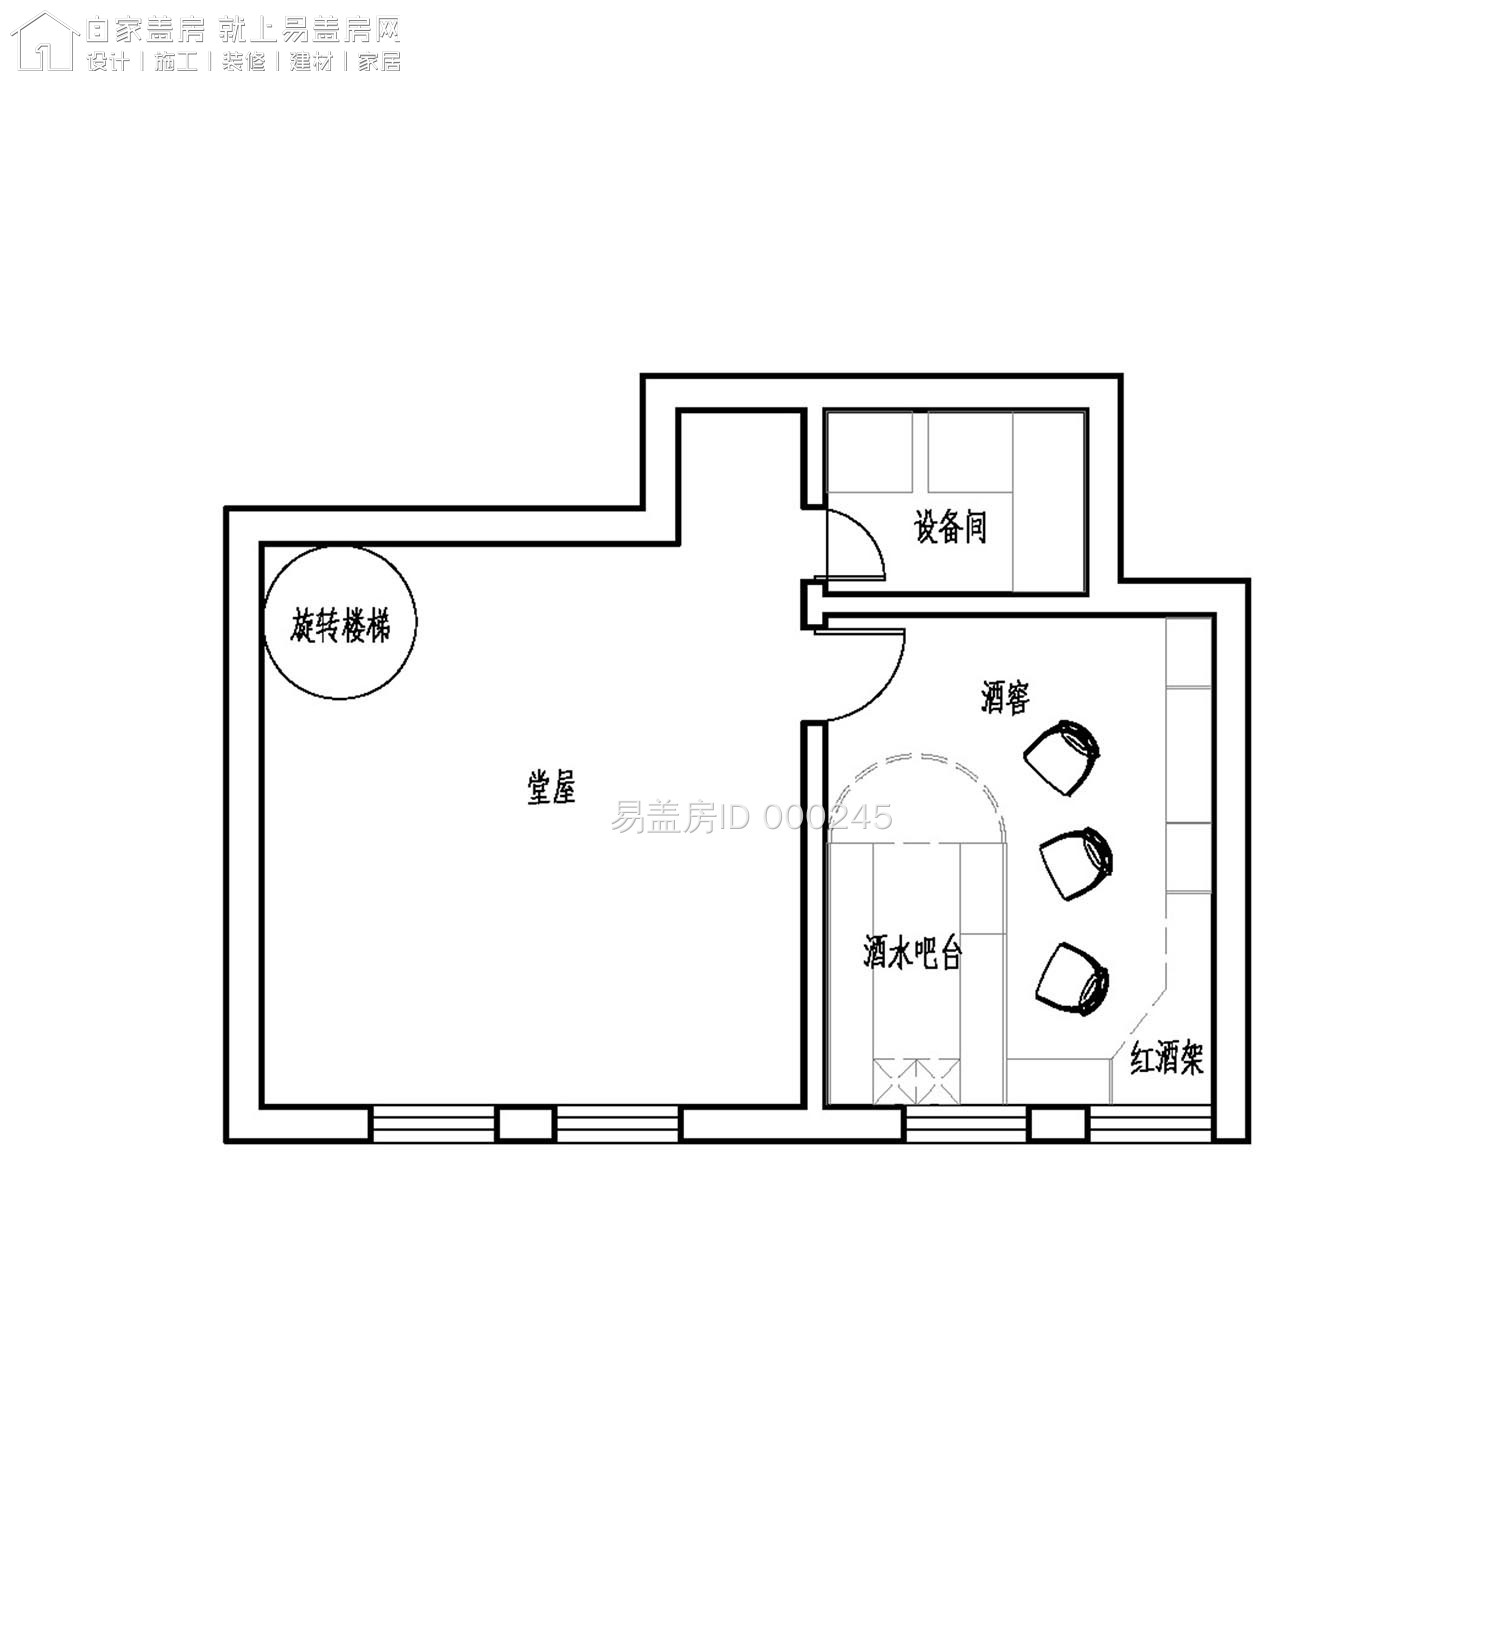 住宅LOFT阁楼层平面图和地下室平面图1.jpg